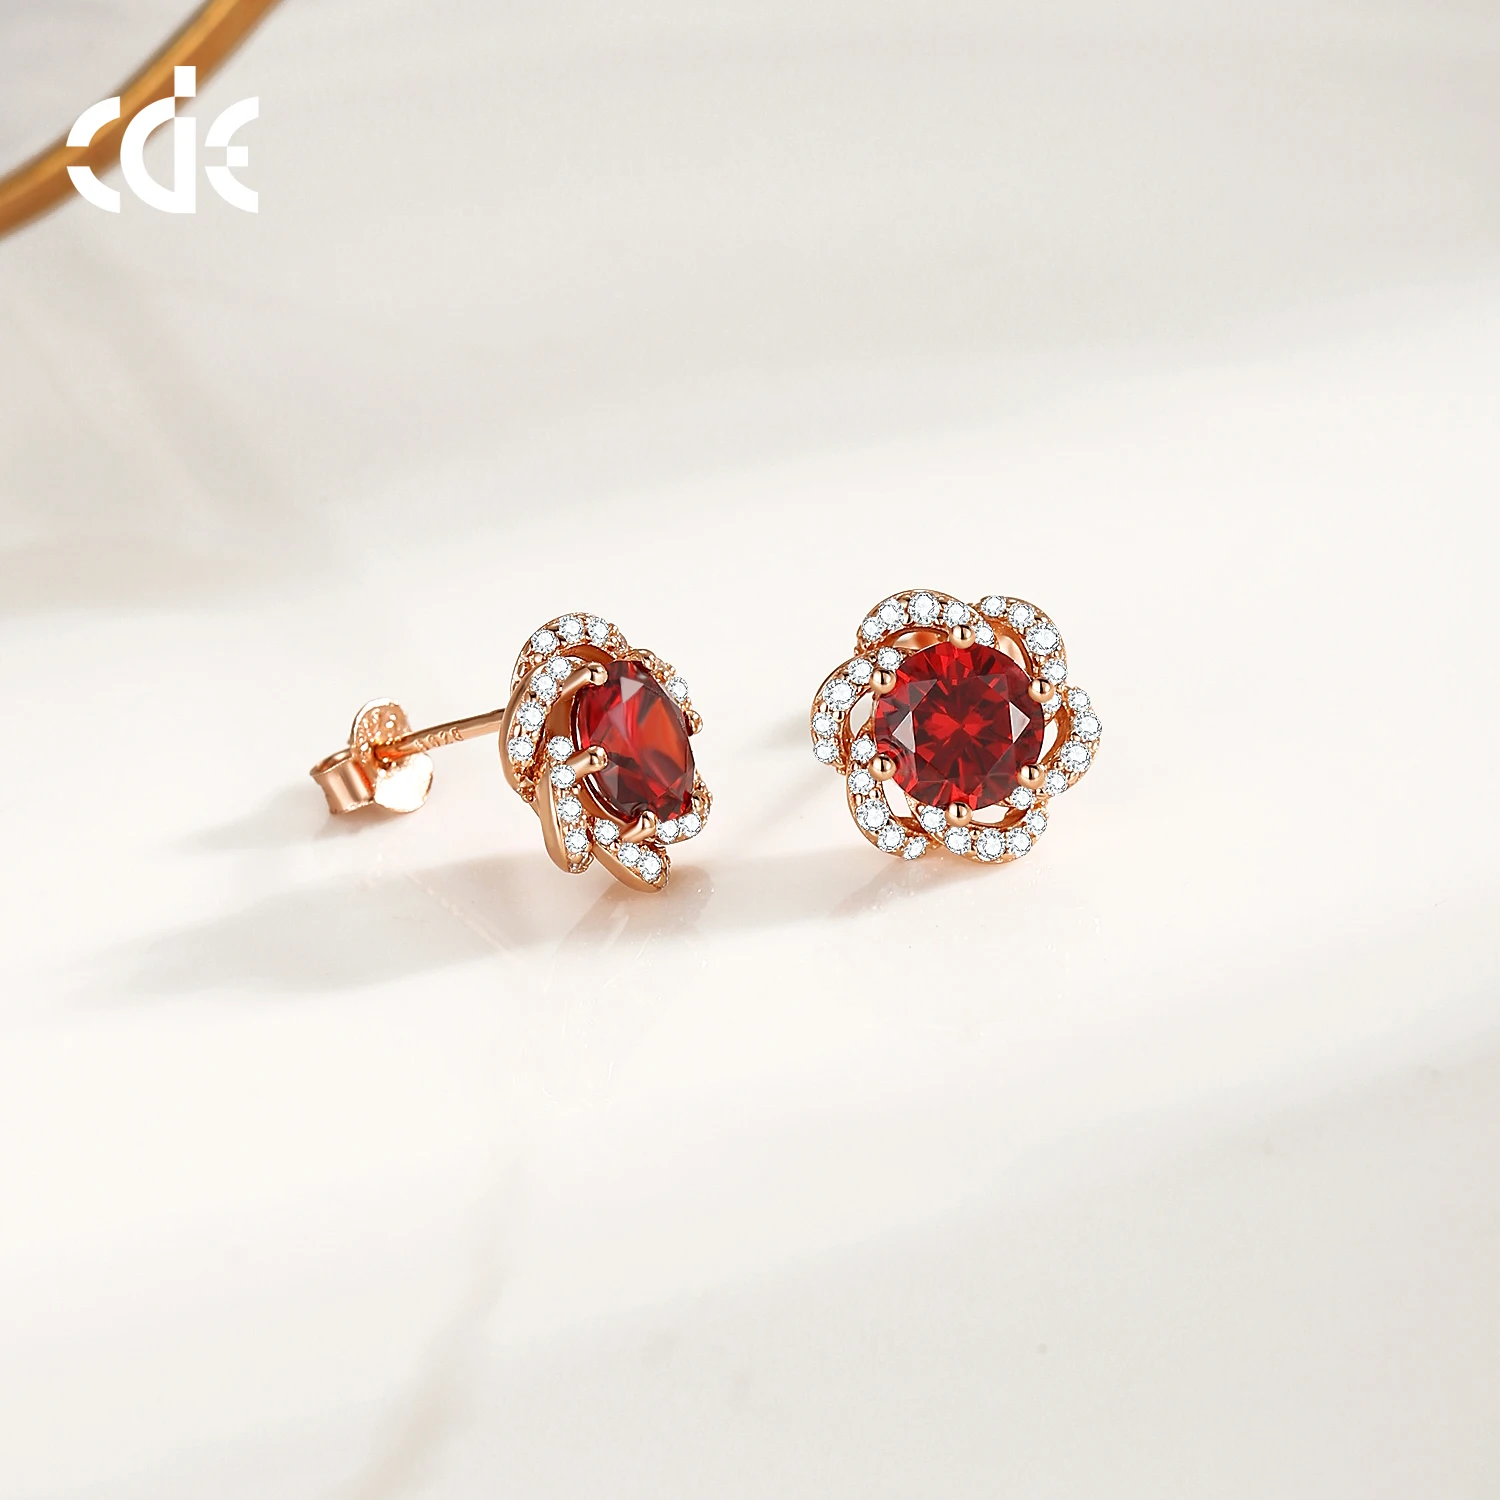 CDE YE1833 Fine Silver 925 Jewelry Crystal Earrings Sterling Silver Garnet Stud Earrings Rose Gold DIY Flower Red Zircon Earring